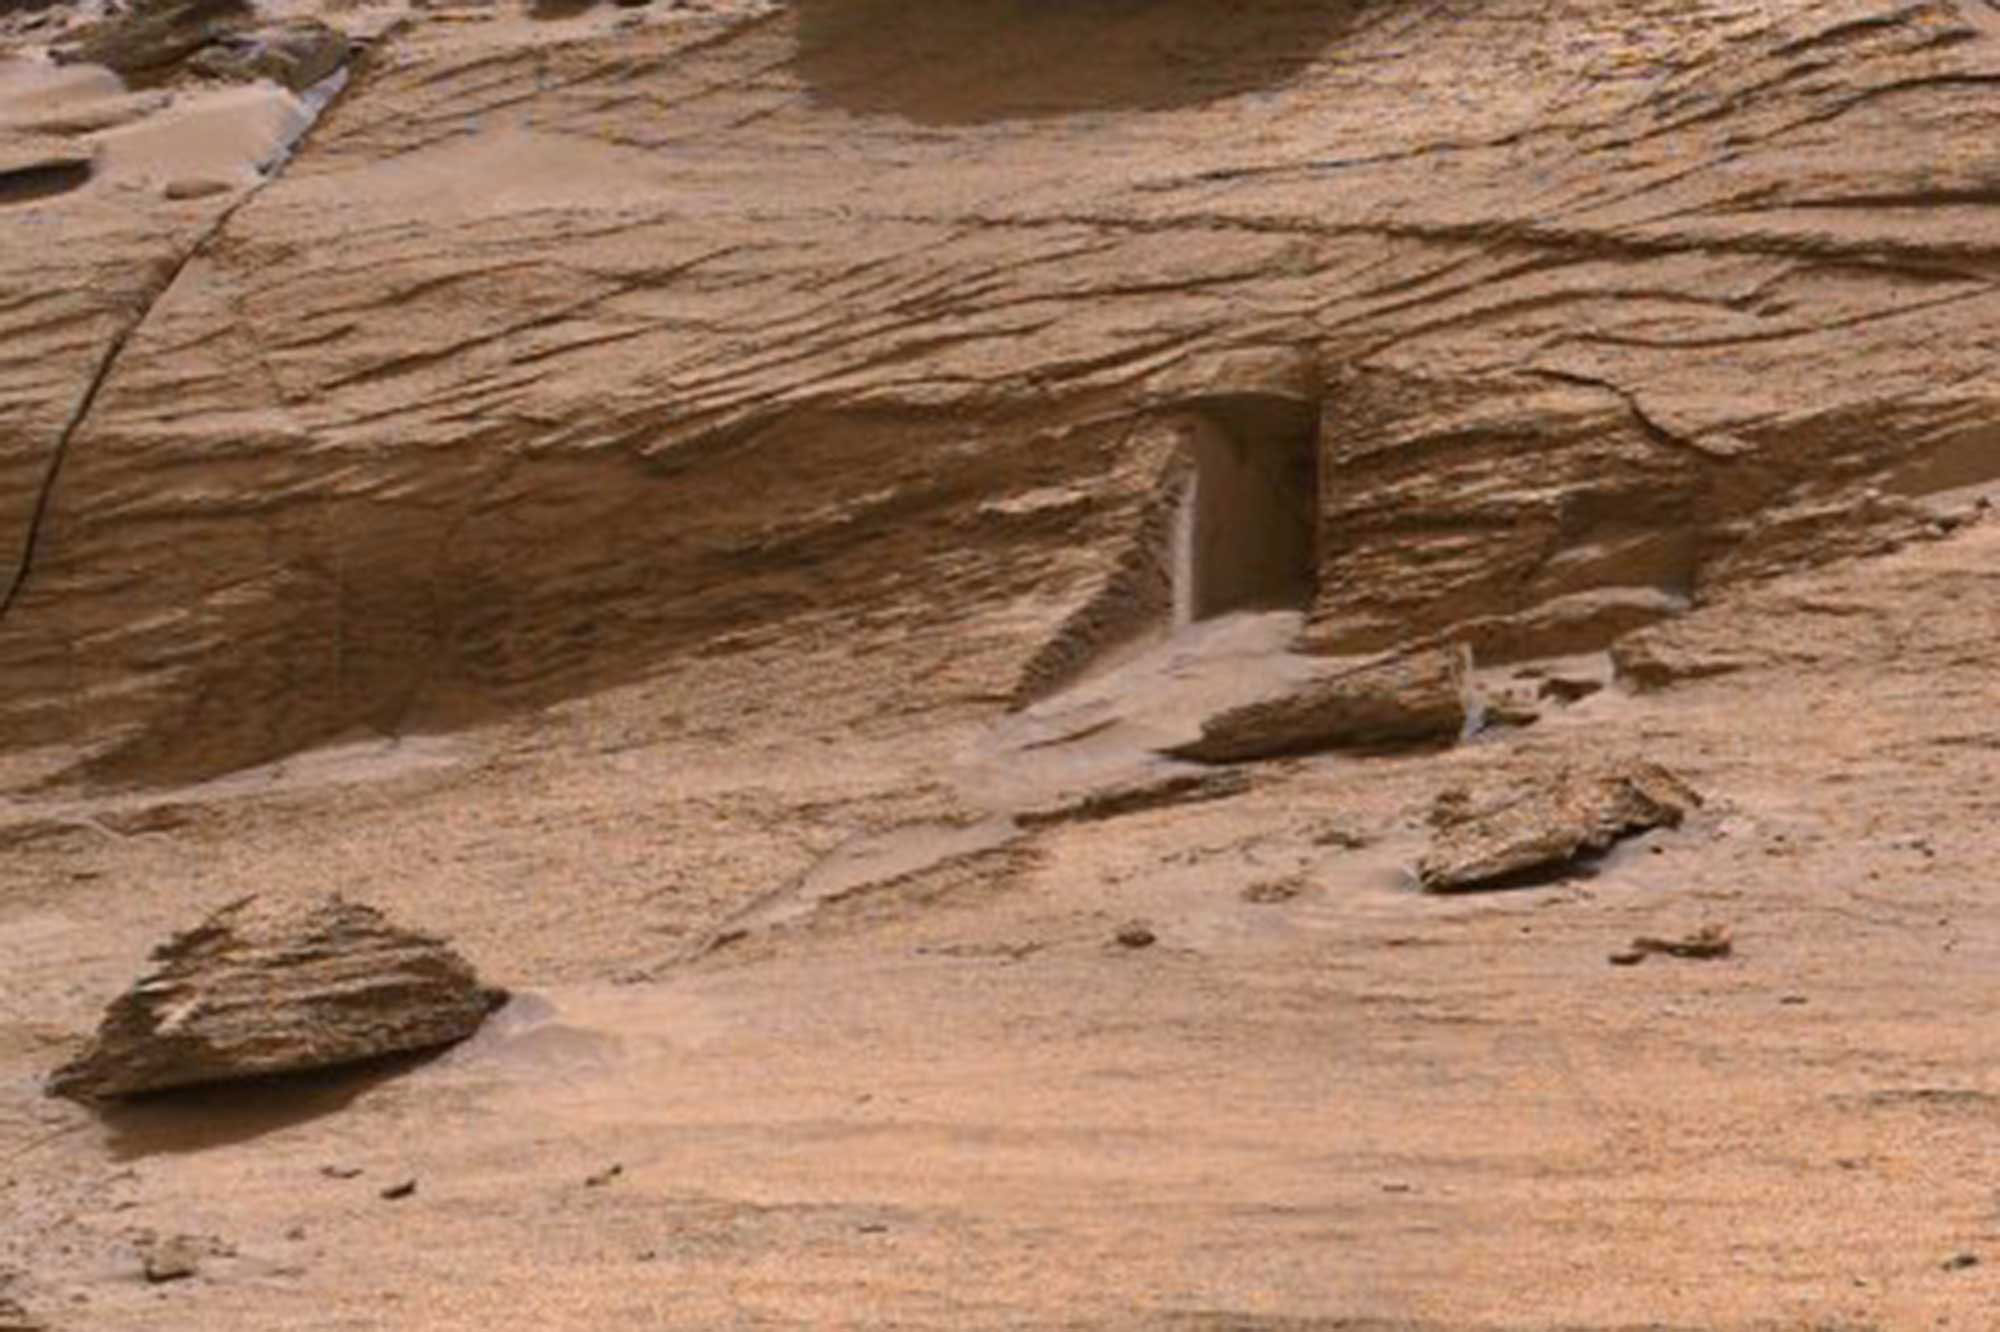 «Porte d’entrée» sur Mars : vous risqueriez de vous cogner la tête